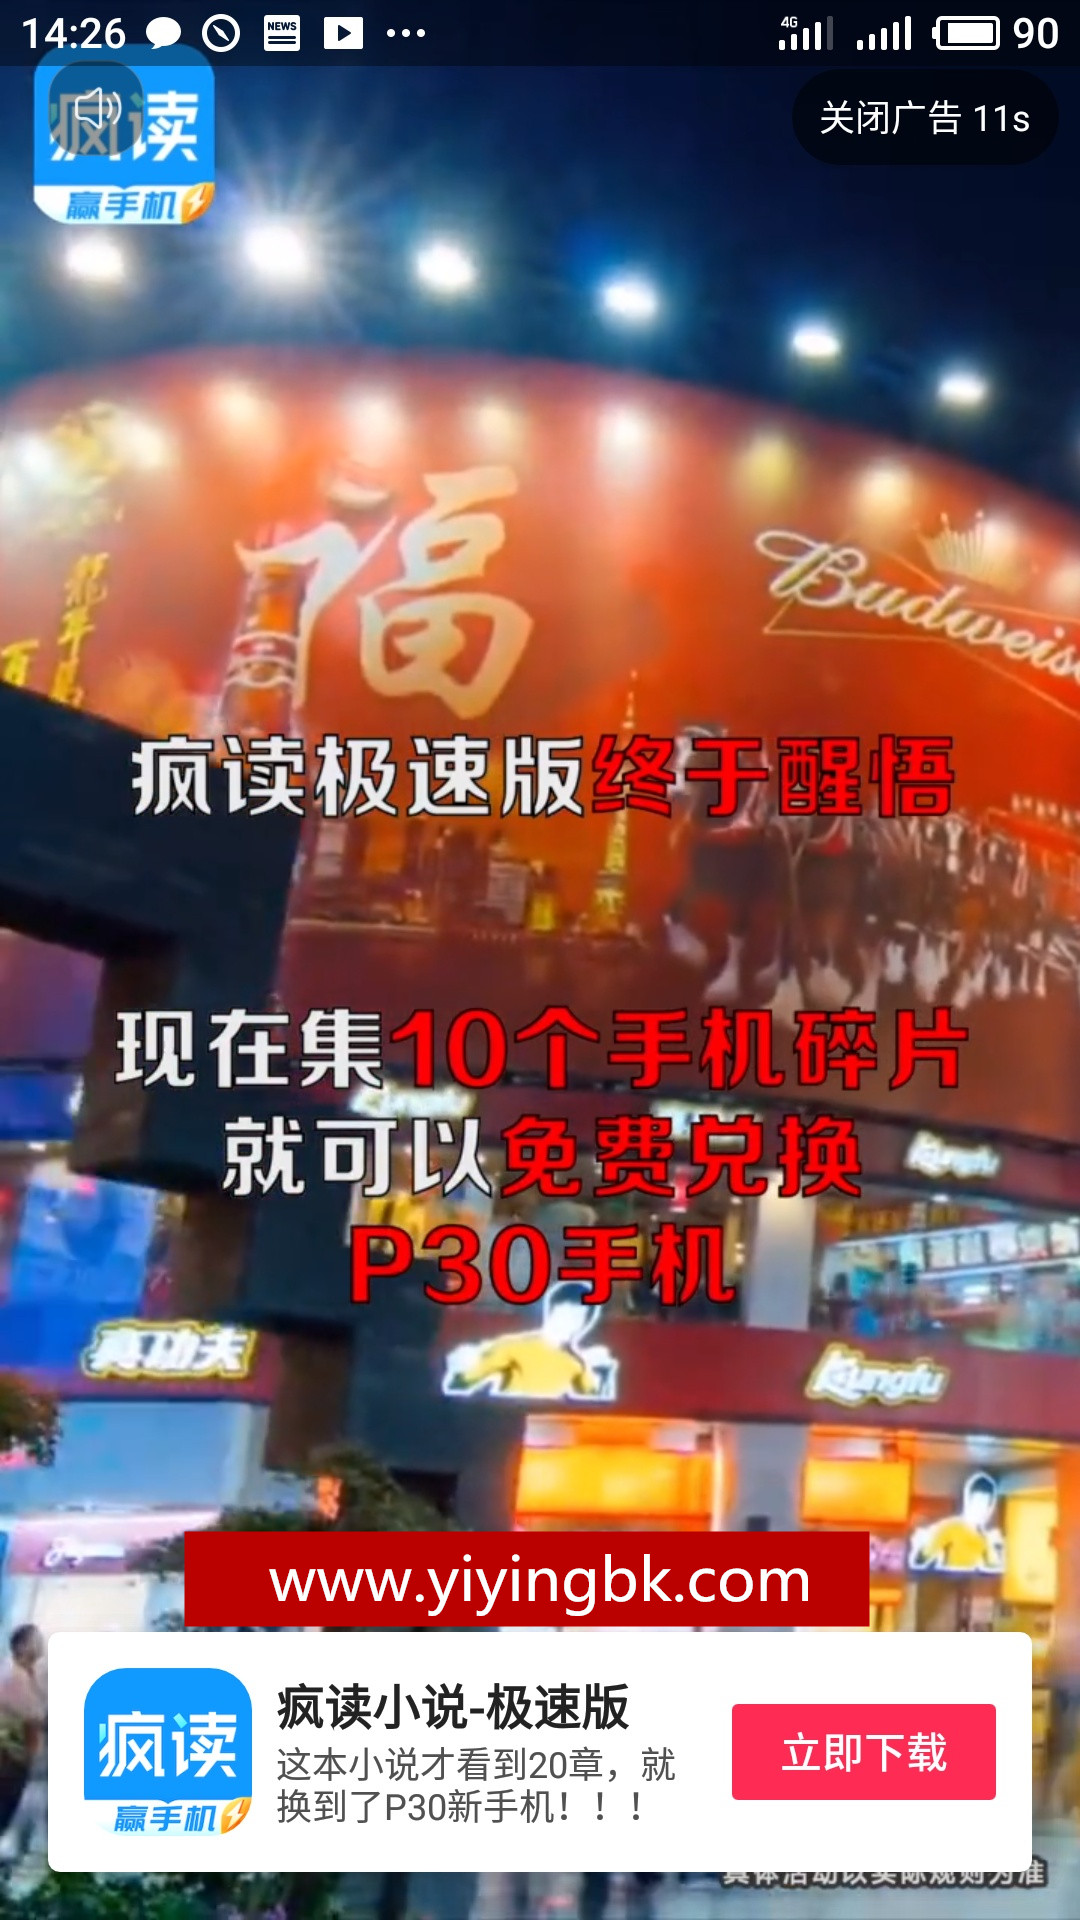 疯读小说极速版集齐10个碎片兑换华为P30手机短视频宣传广告，www.yiyingbk.com